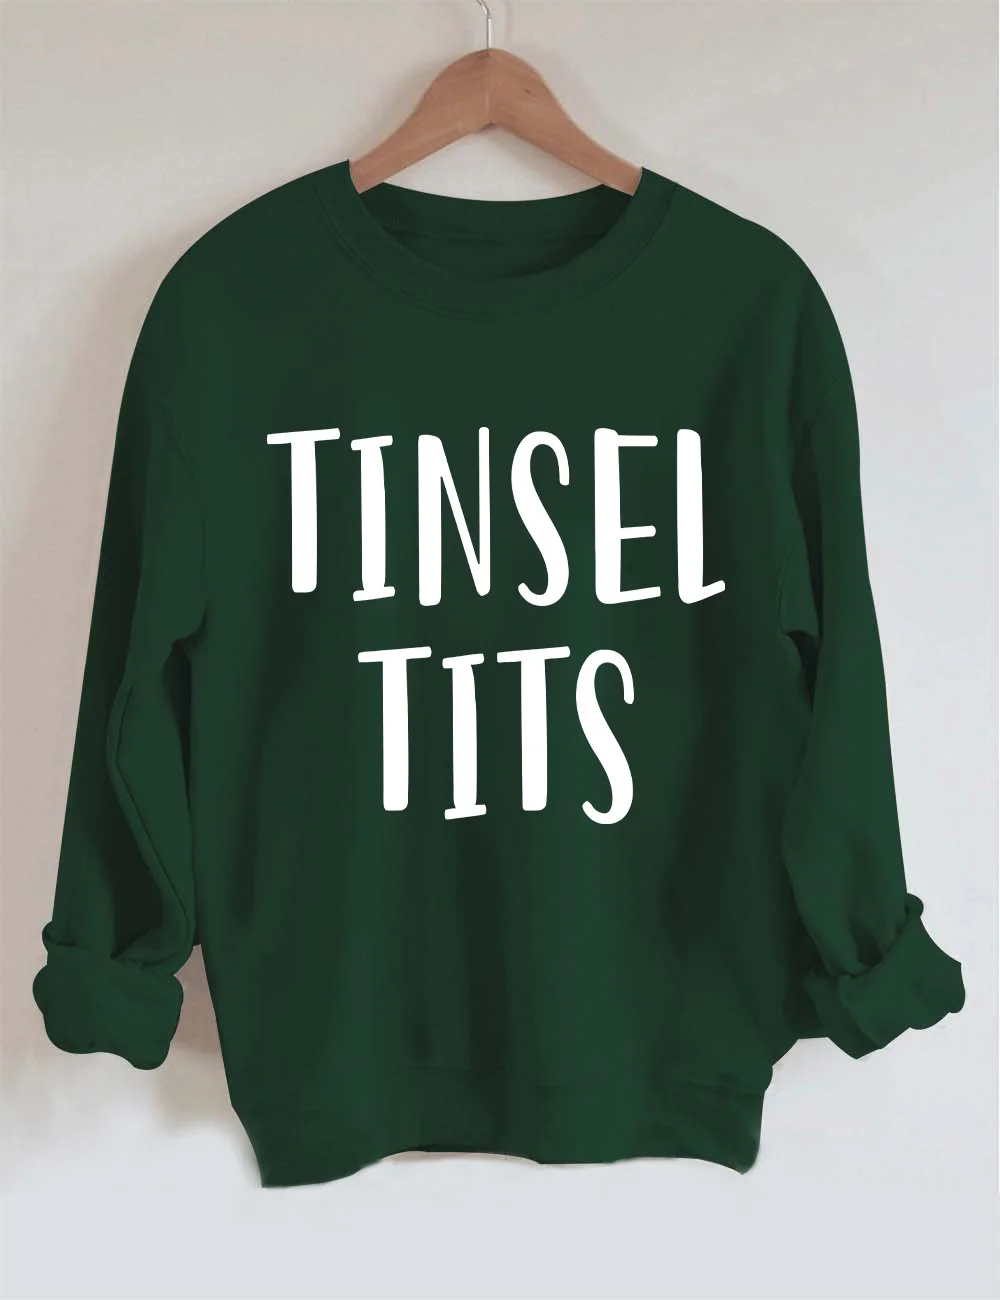 Jingle Balls/Tinsel Tits Matching Sweatshirt